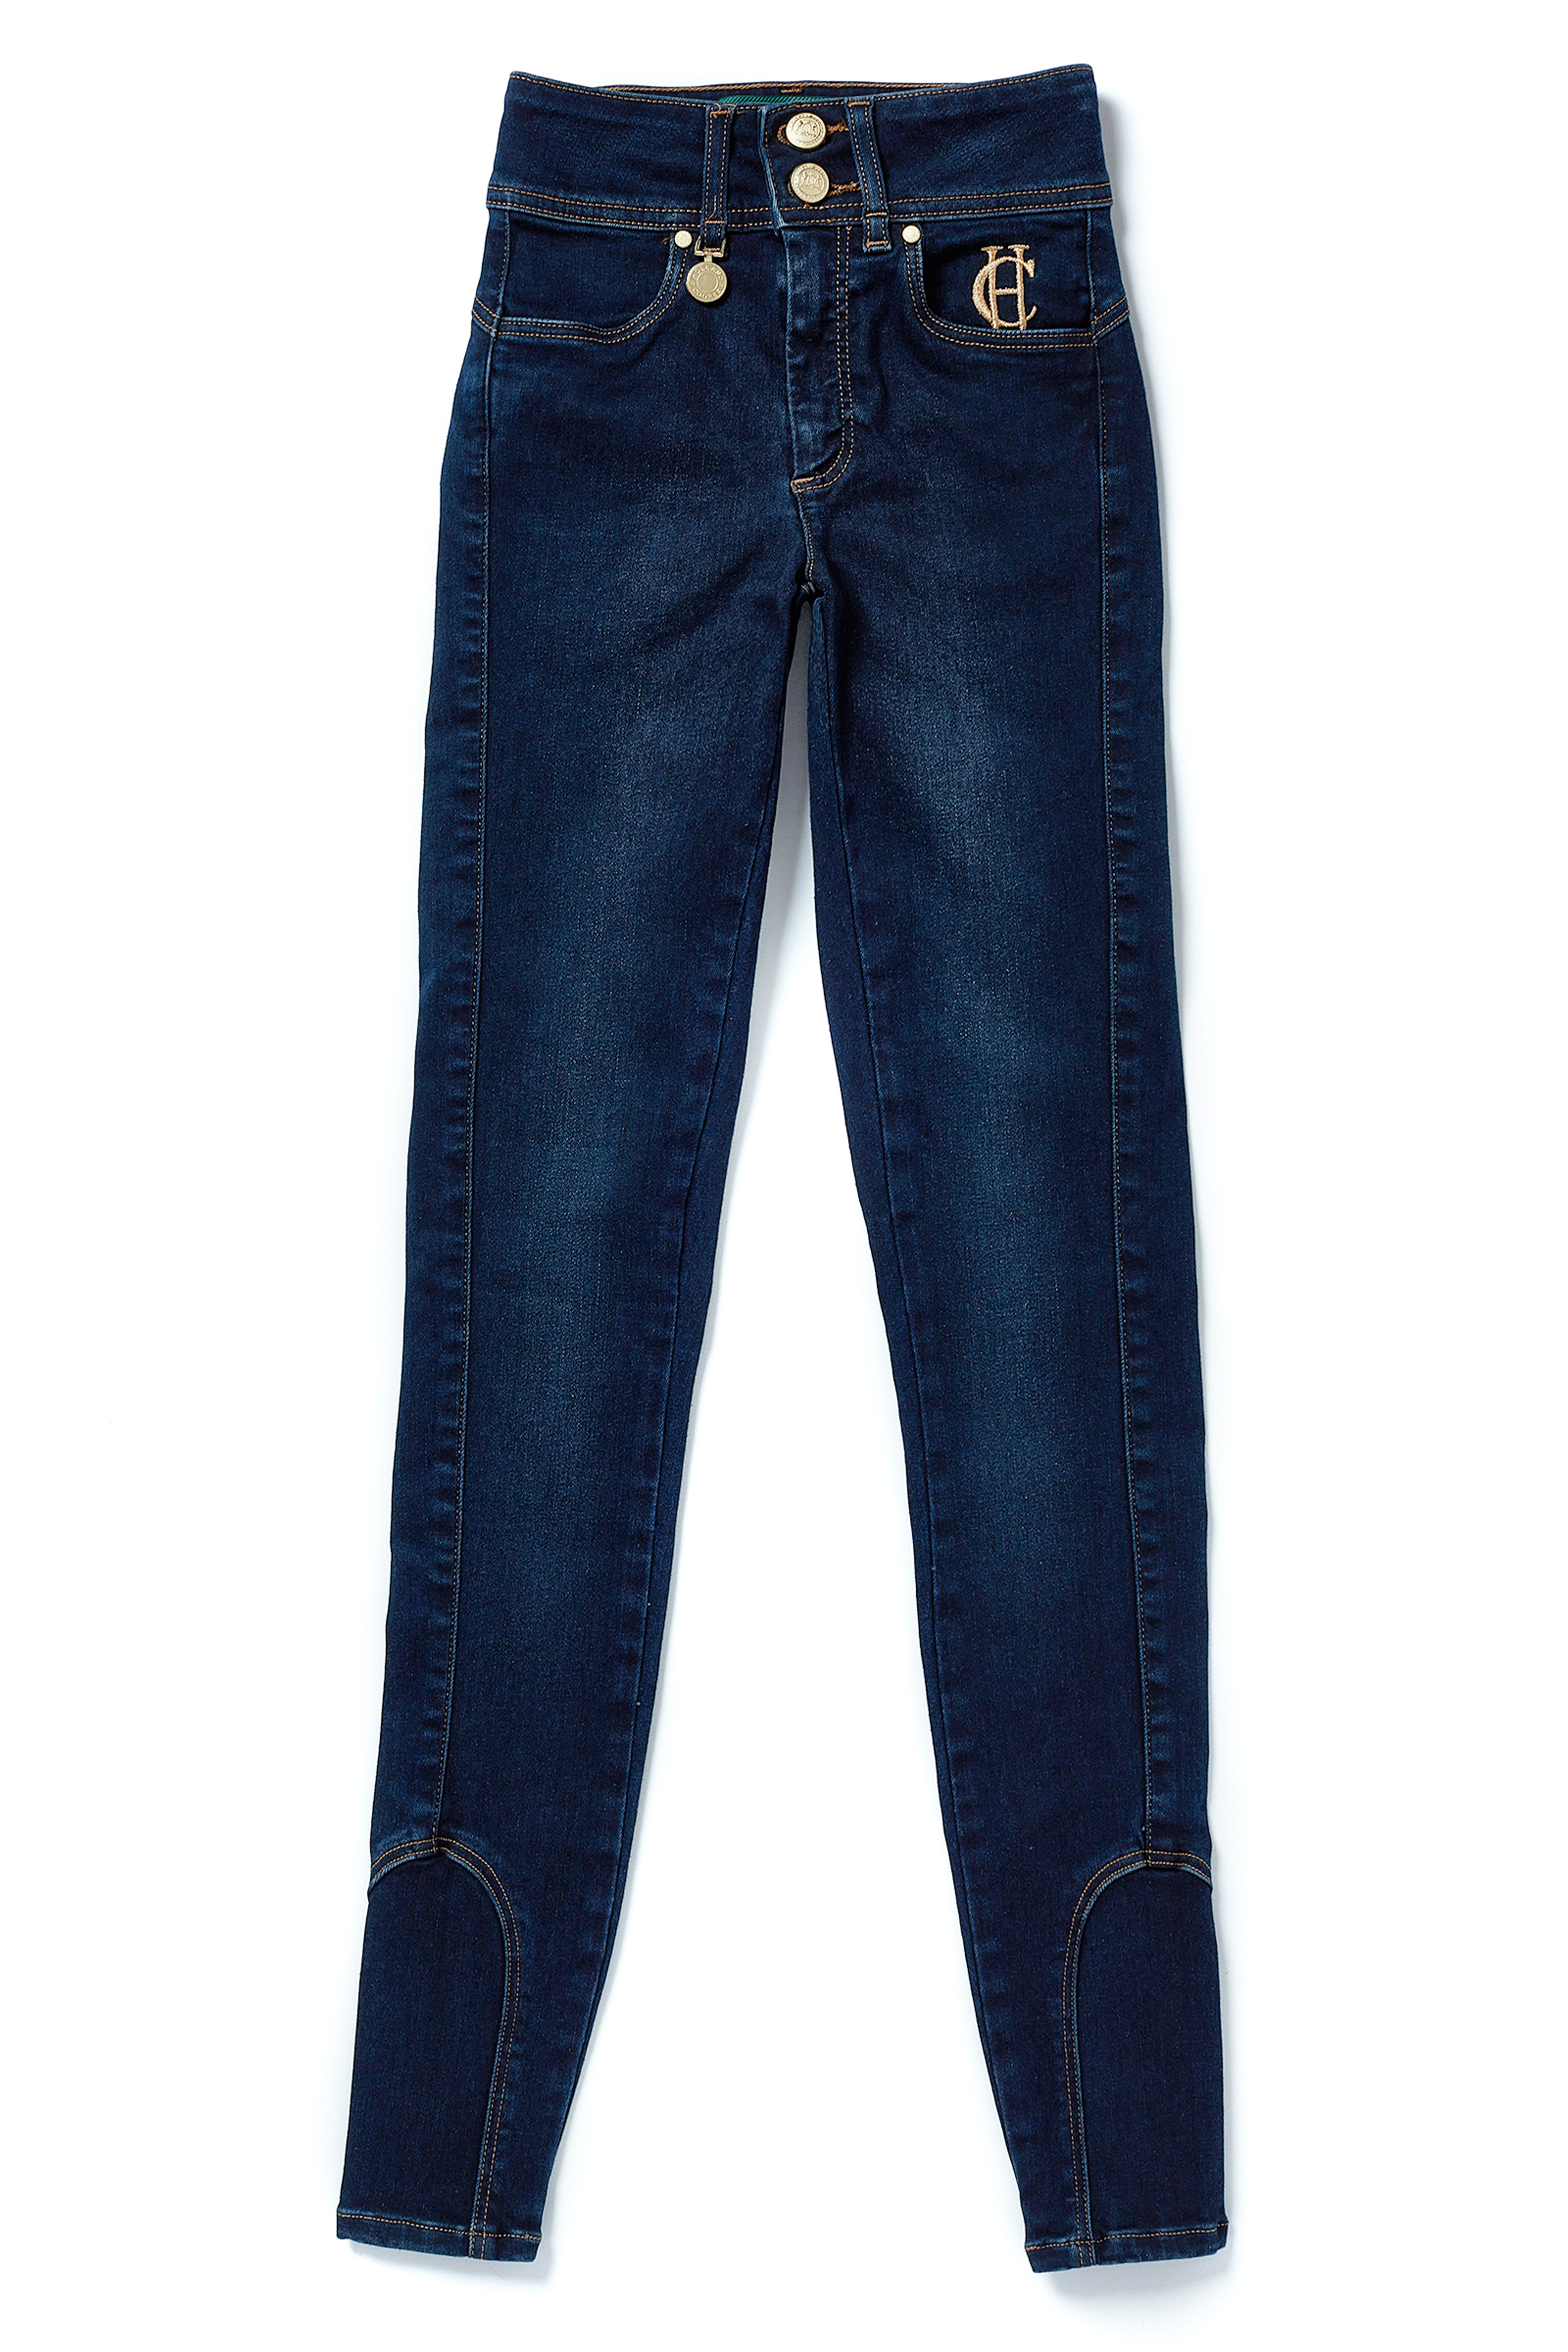 Deviation Refrain Straighten Jeans – Holland Cooper ®